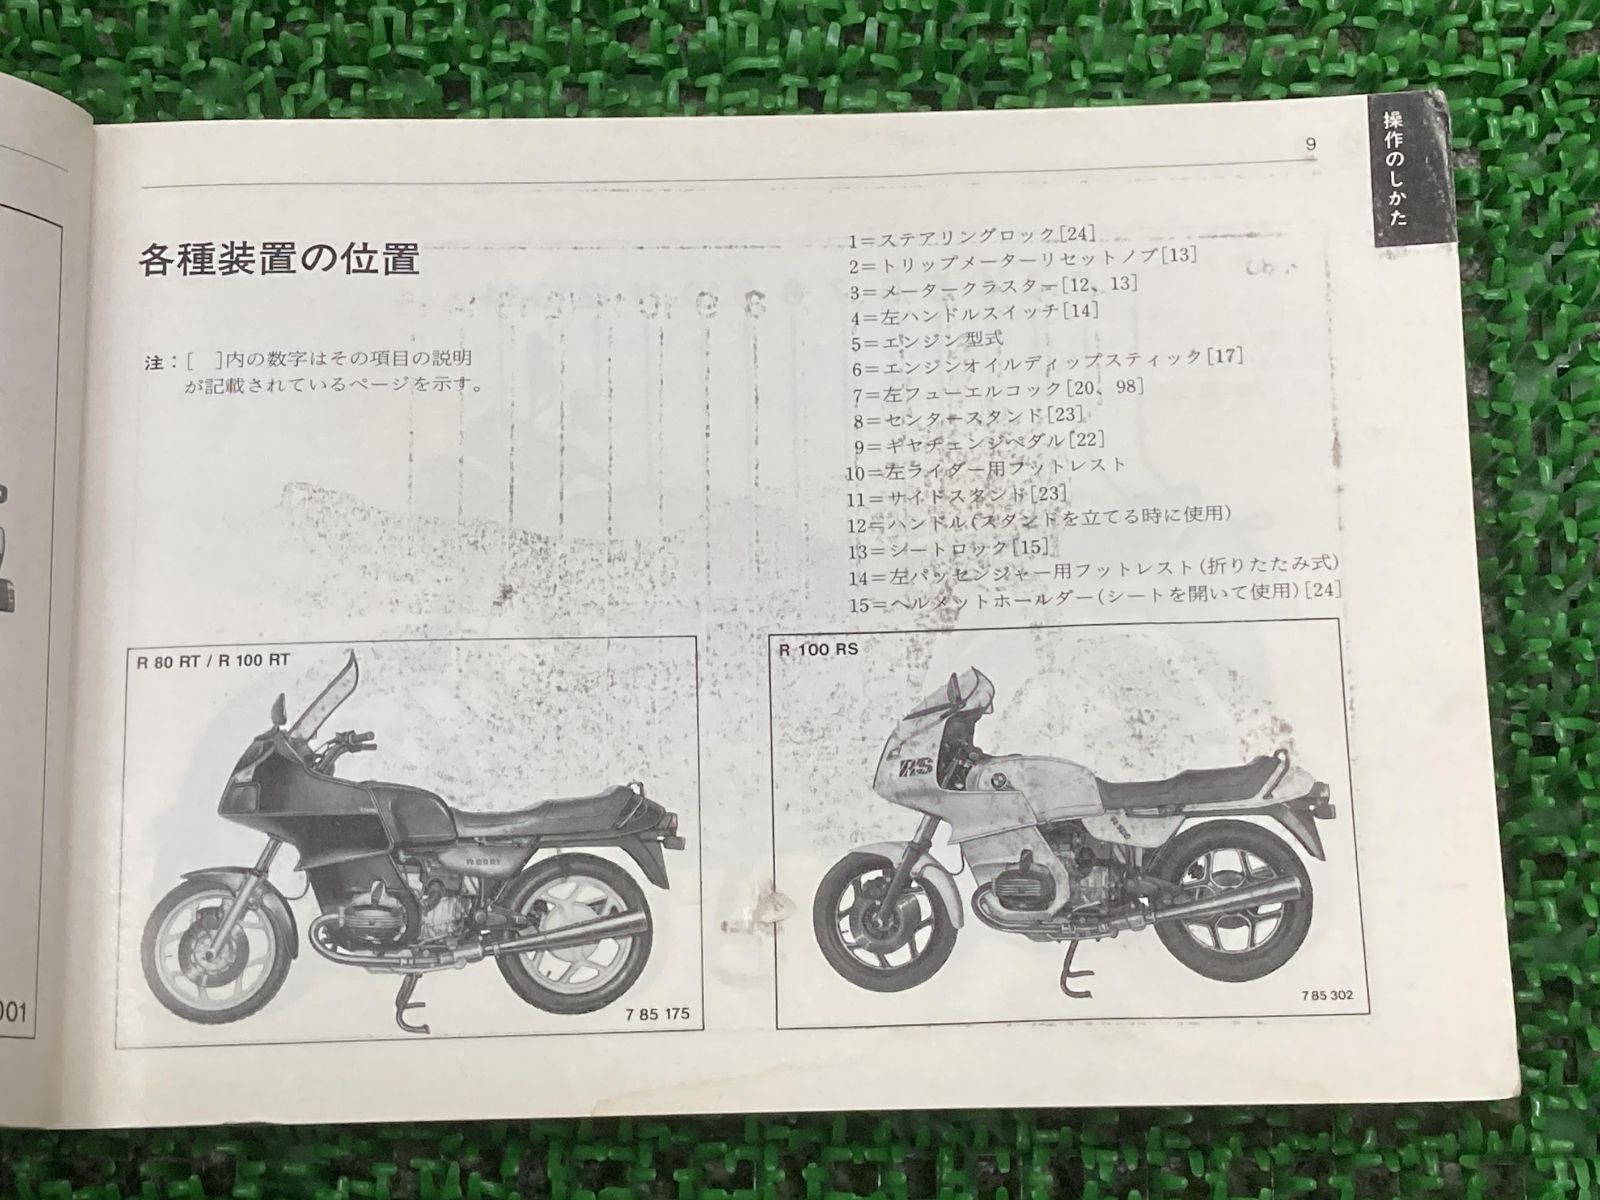 BMW マニュアル　Rider’s Manual R80 R65 R80RT全て英語での説明になっています